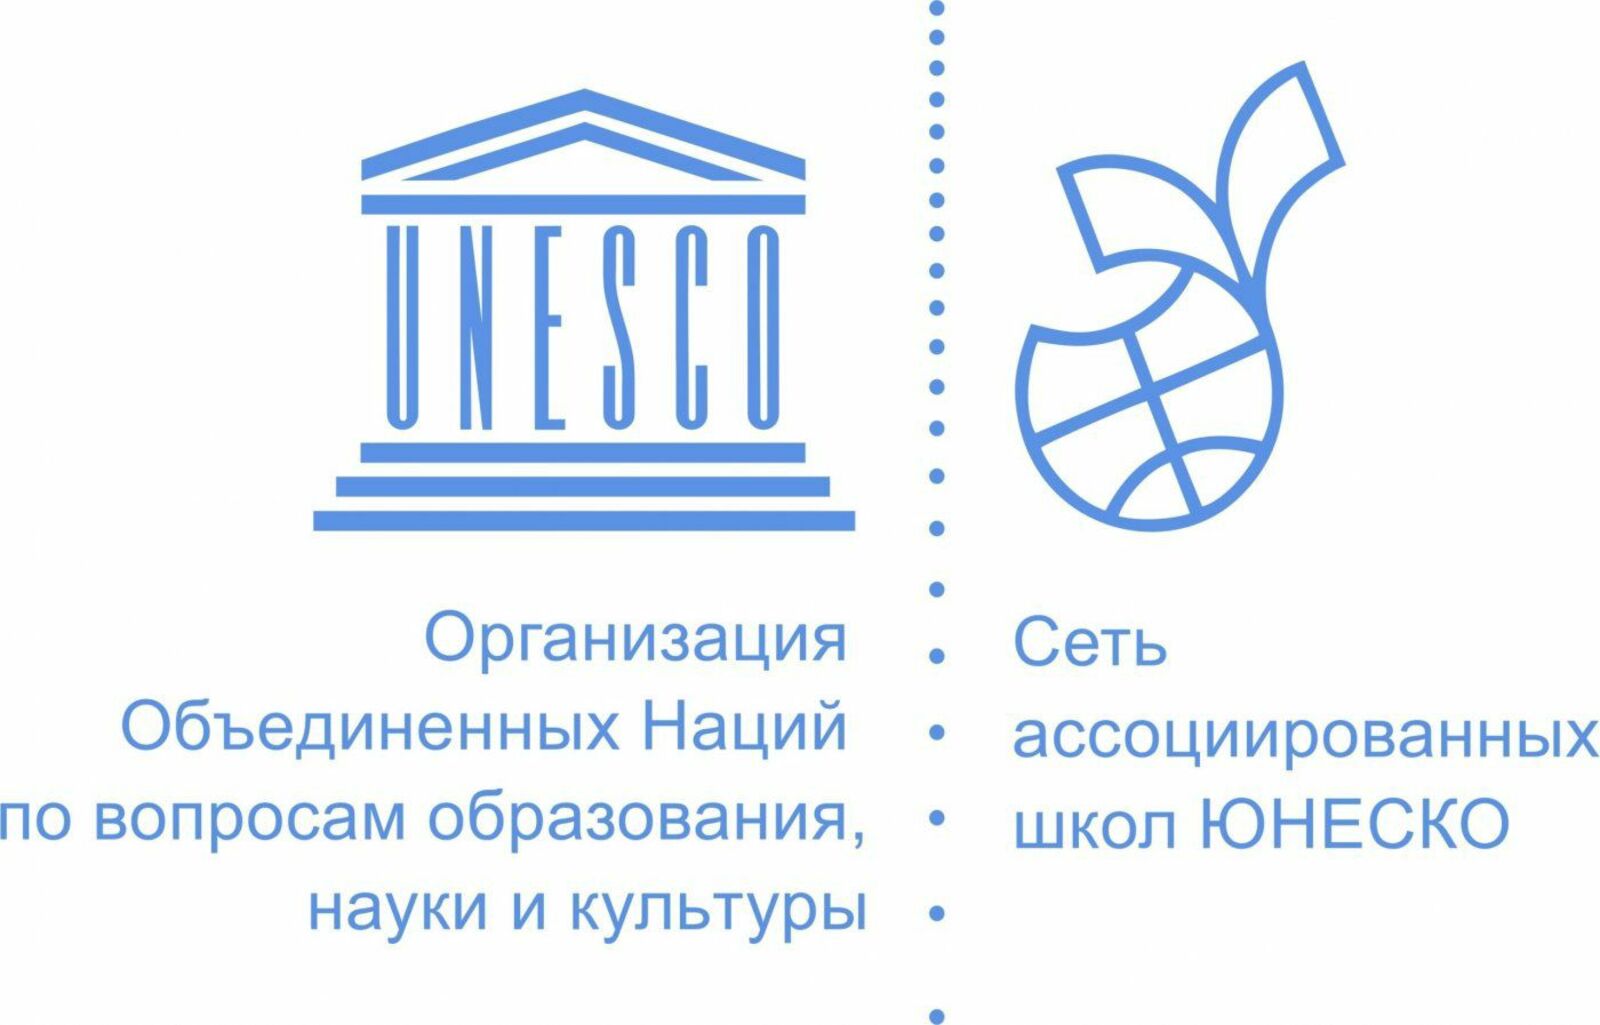 Сеть ассоциированных школ ЮНЕСКО. Эмблема школ ЮНЕСКО. Ассоциированные школы ЮНЕСКО эмблема. Ассоциированные школы ЮНЕСКО В России.